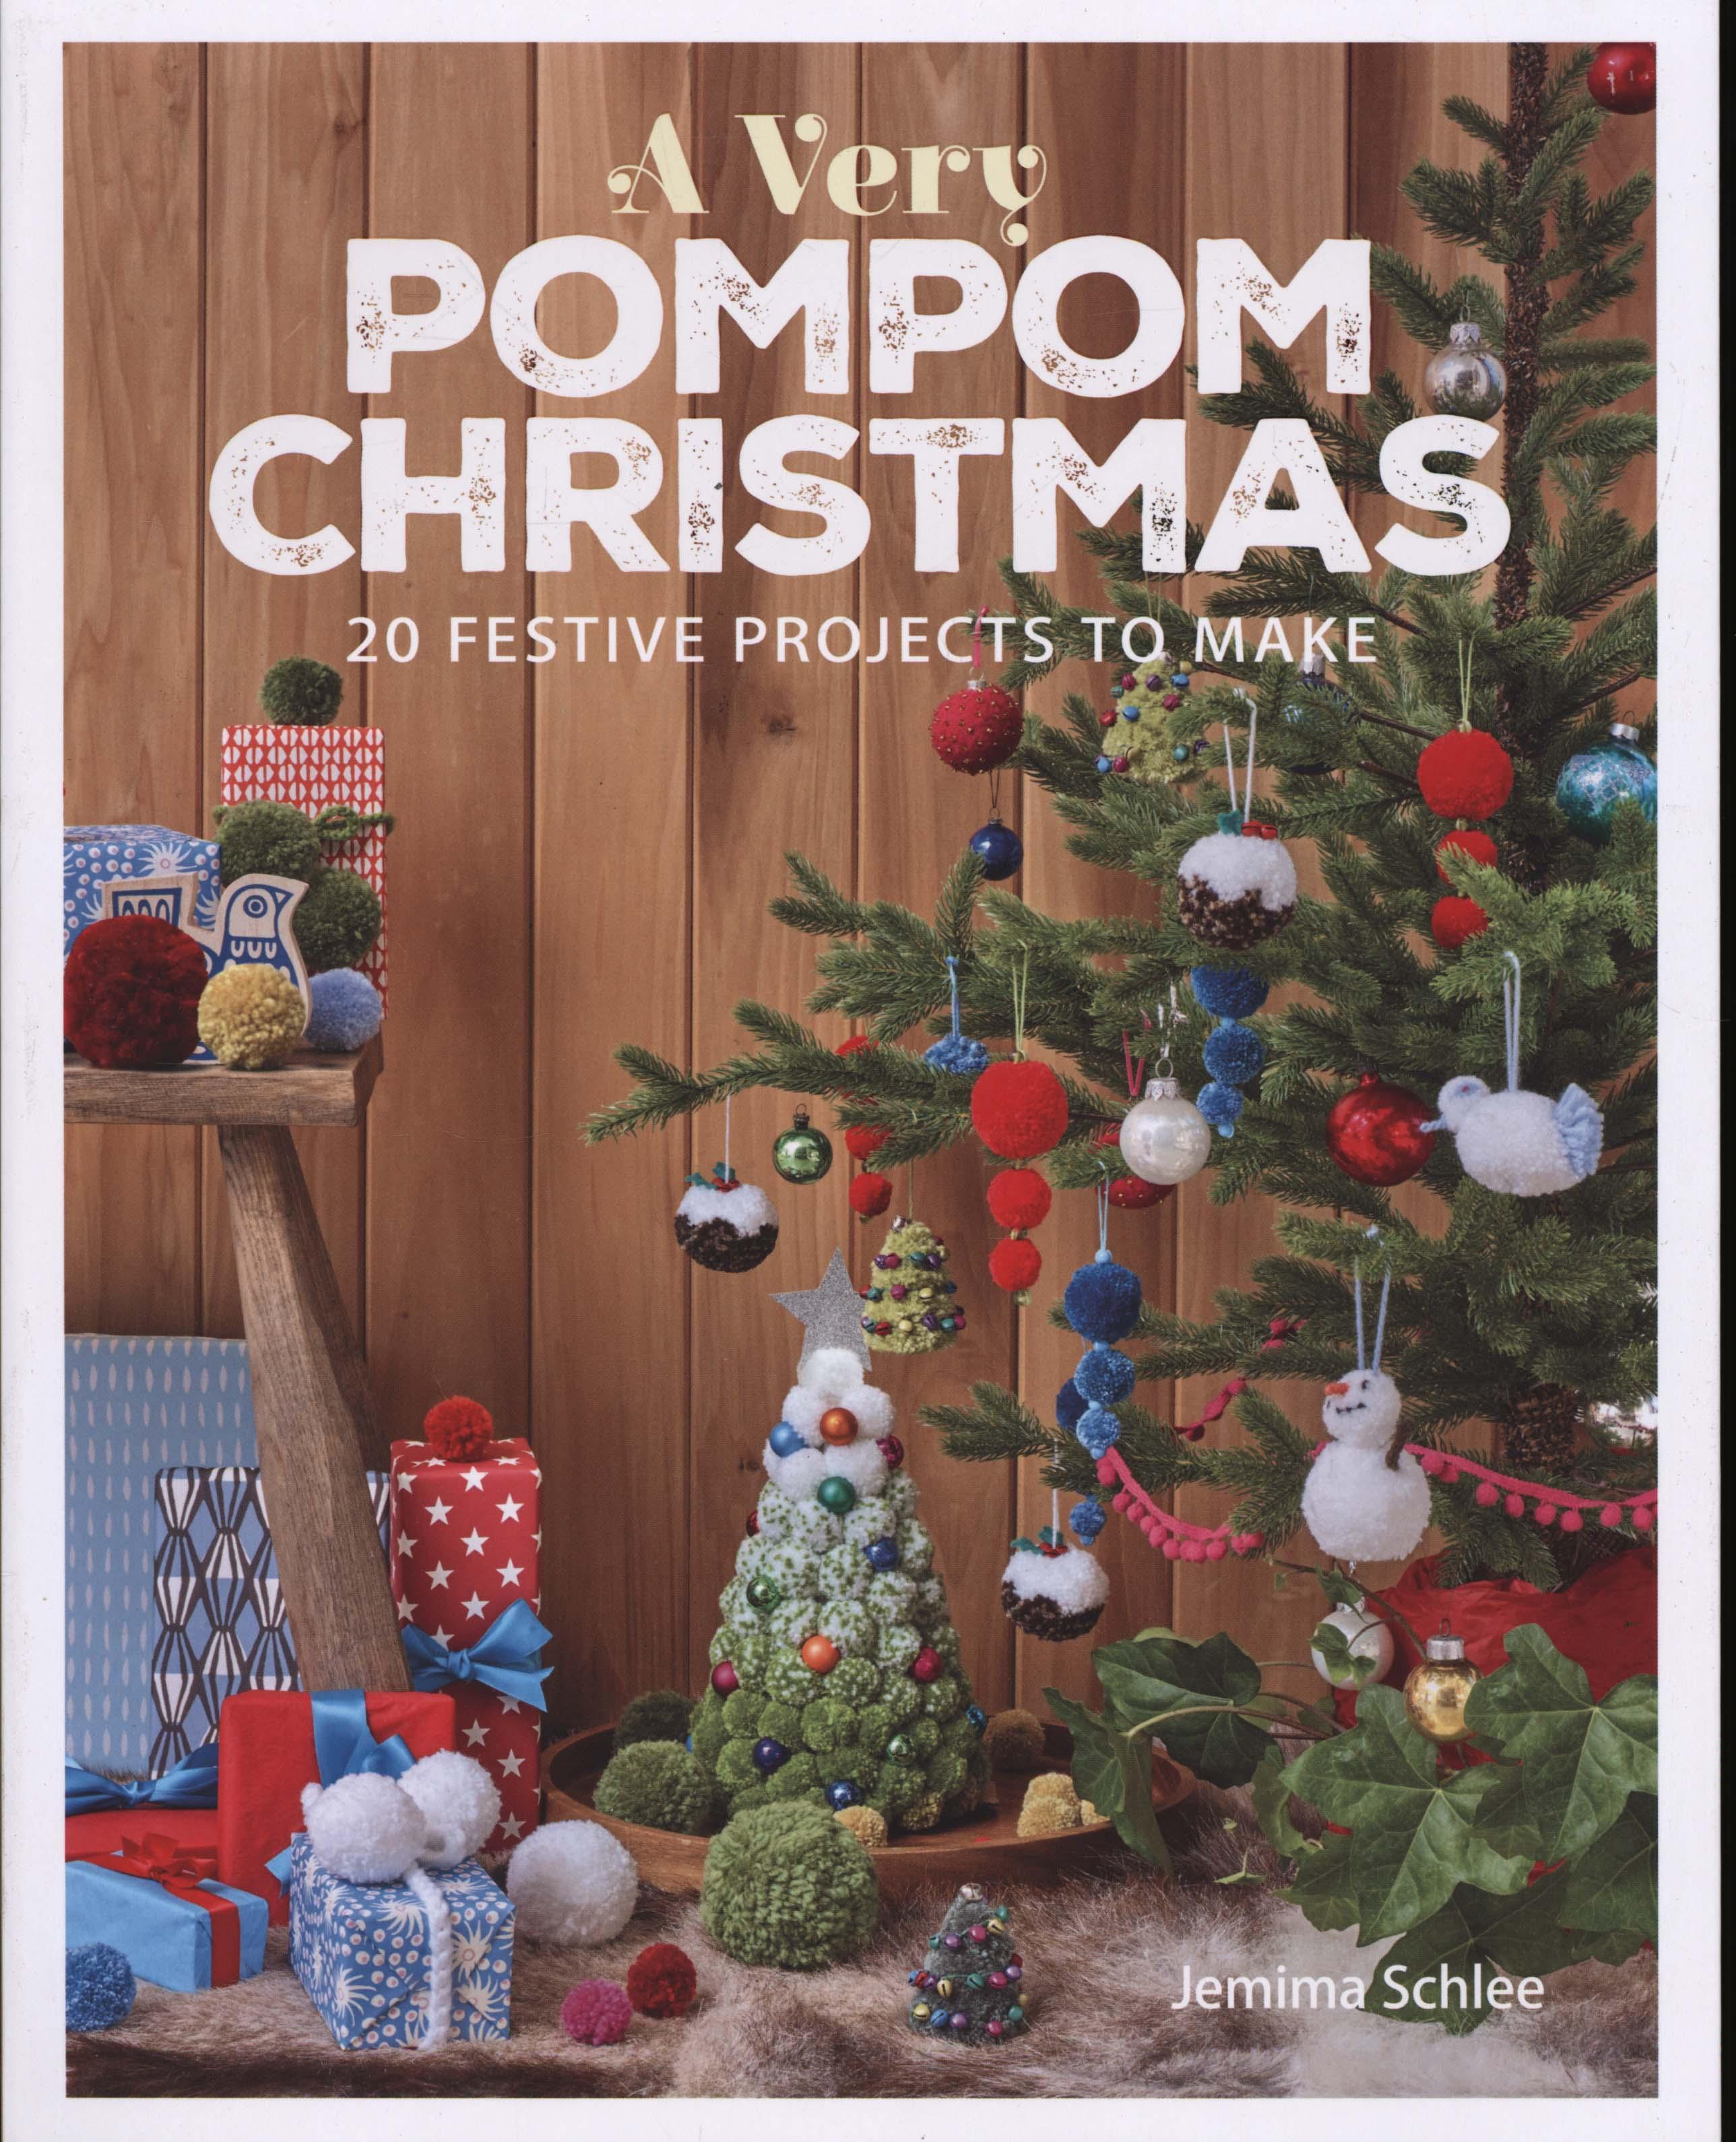 Very Pompom Christmas